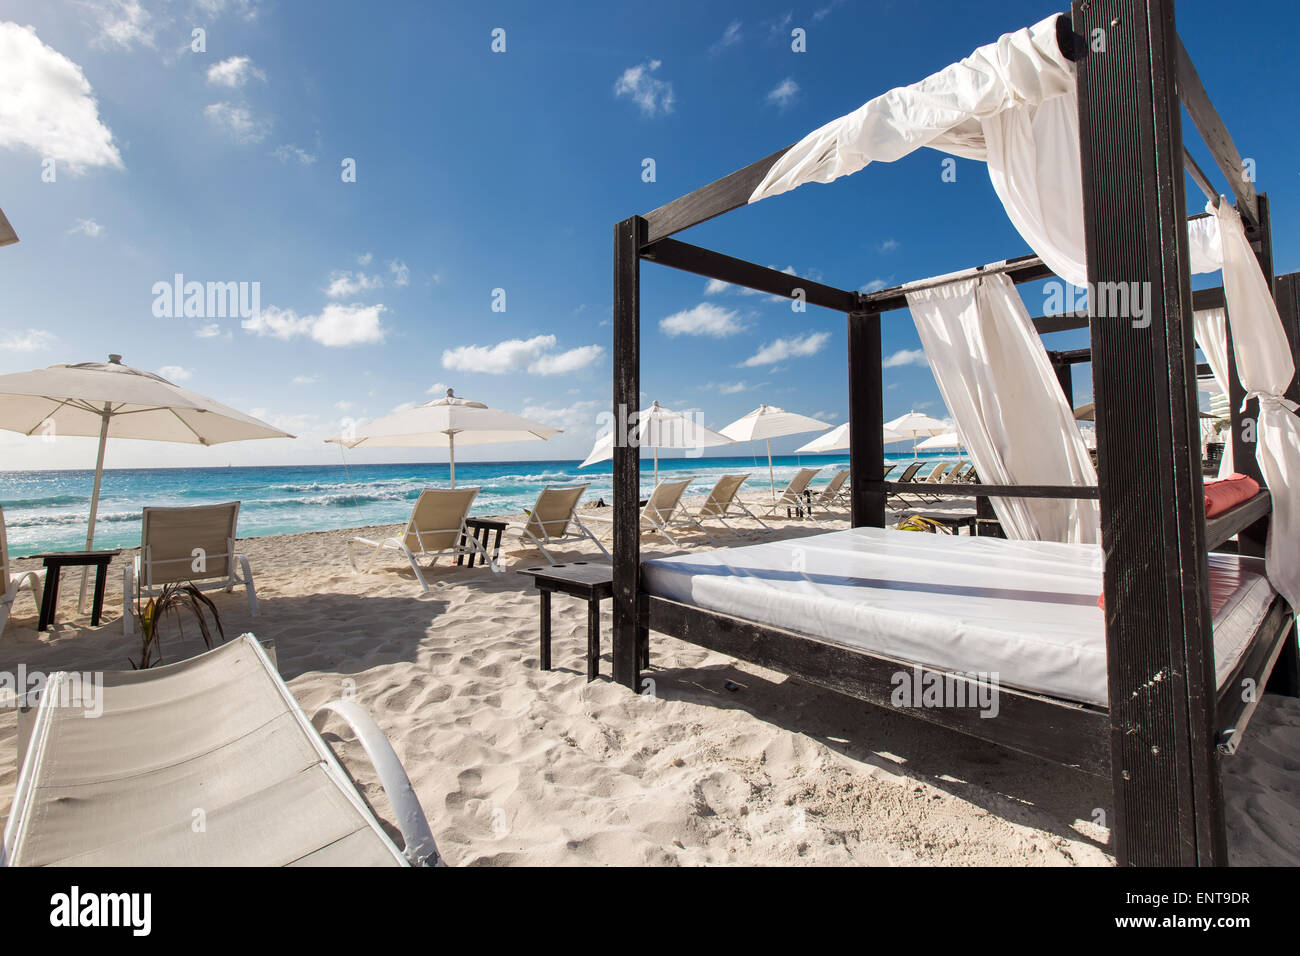 Luxury lettini in legno su una bella spiaggia caraibica Foto Stock